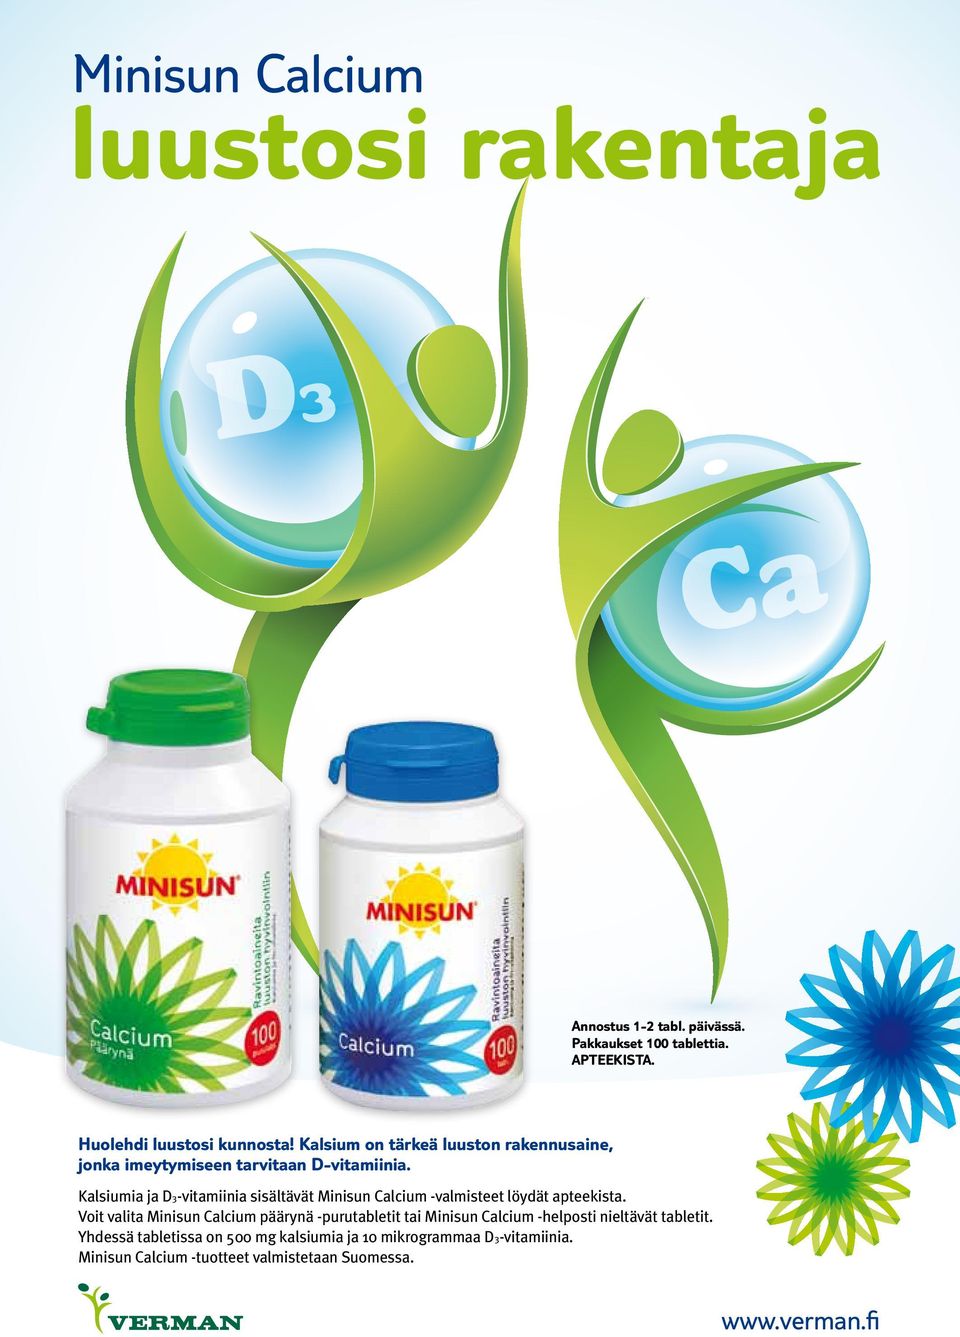 Kalsiumia ja D3-vitamiinia sisältävät Minisun Calcium -valmisteet löydät apteekista.